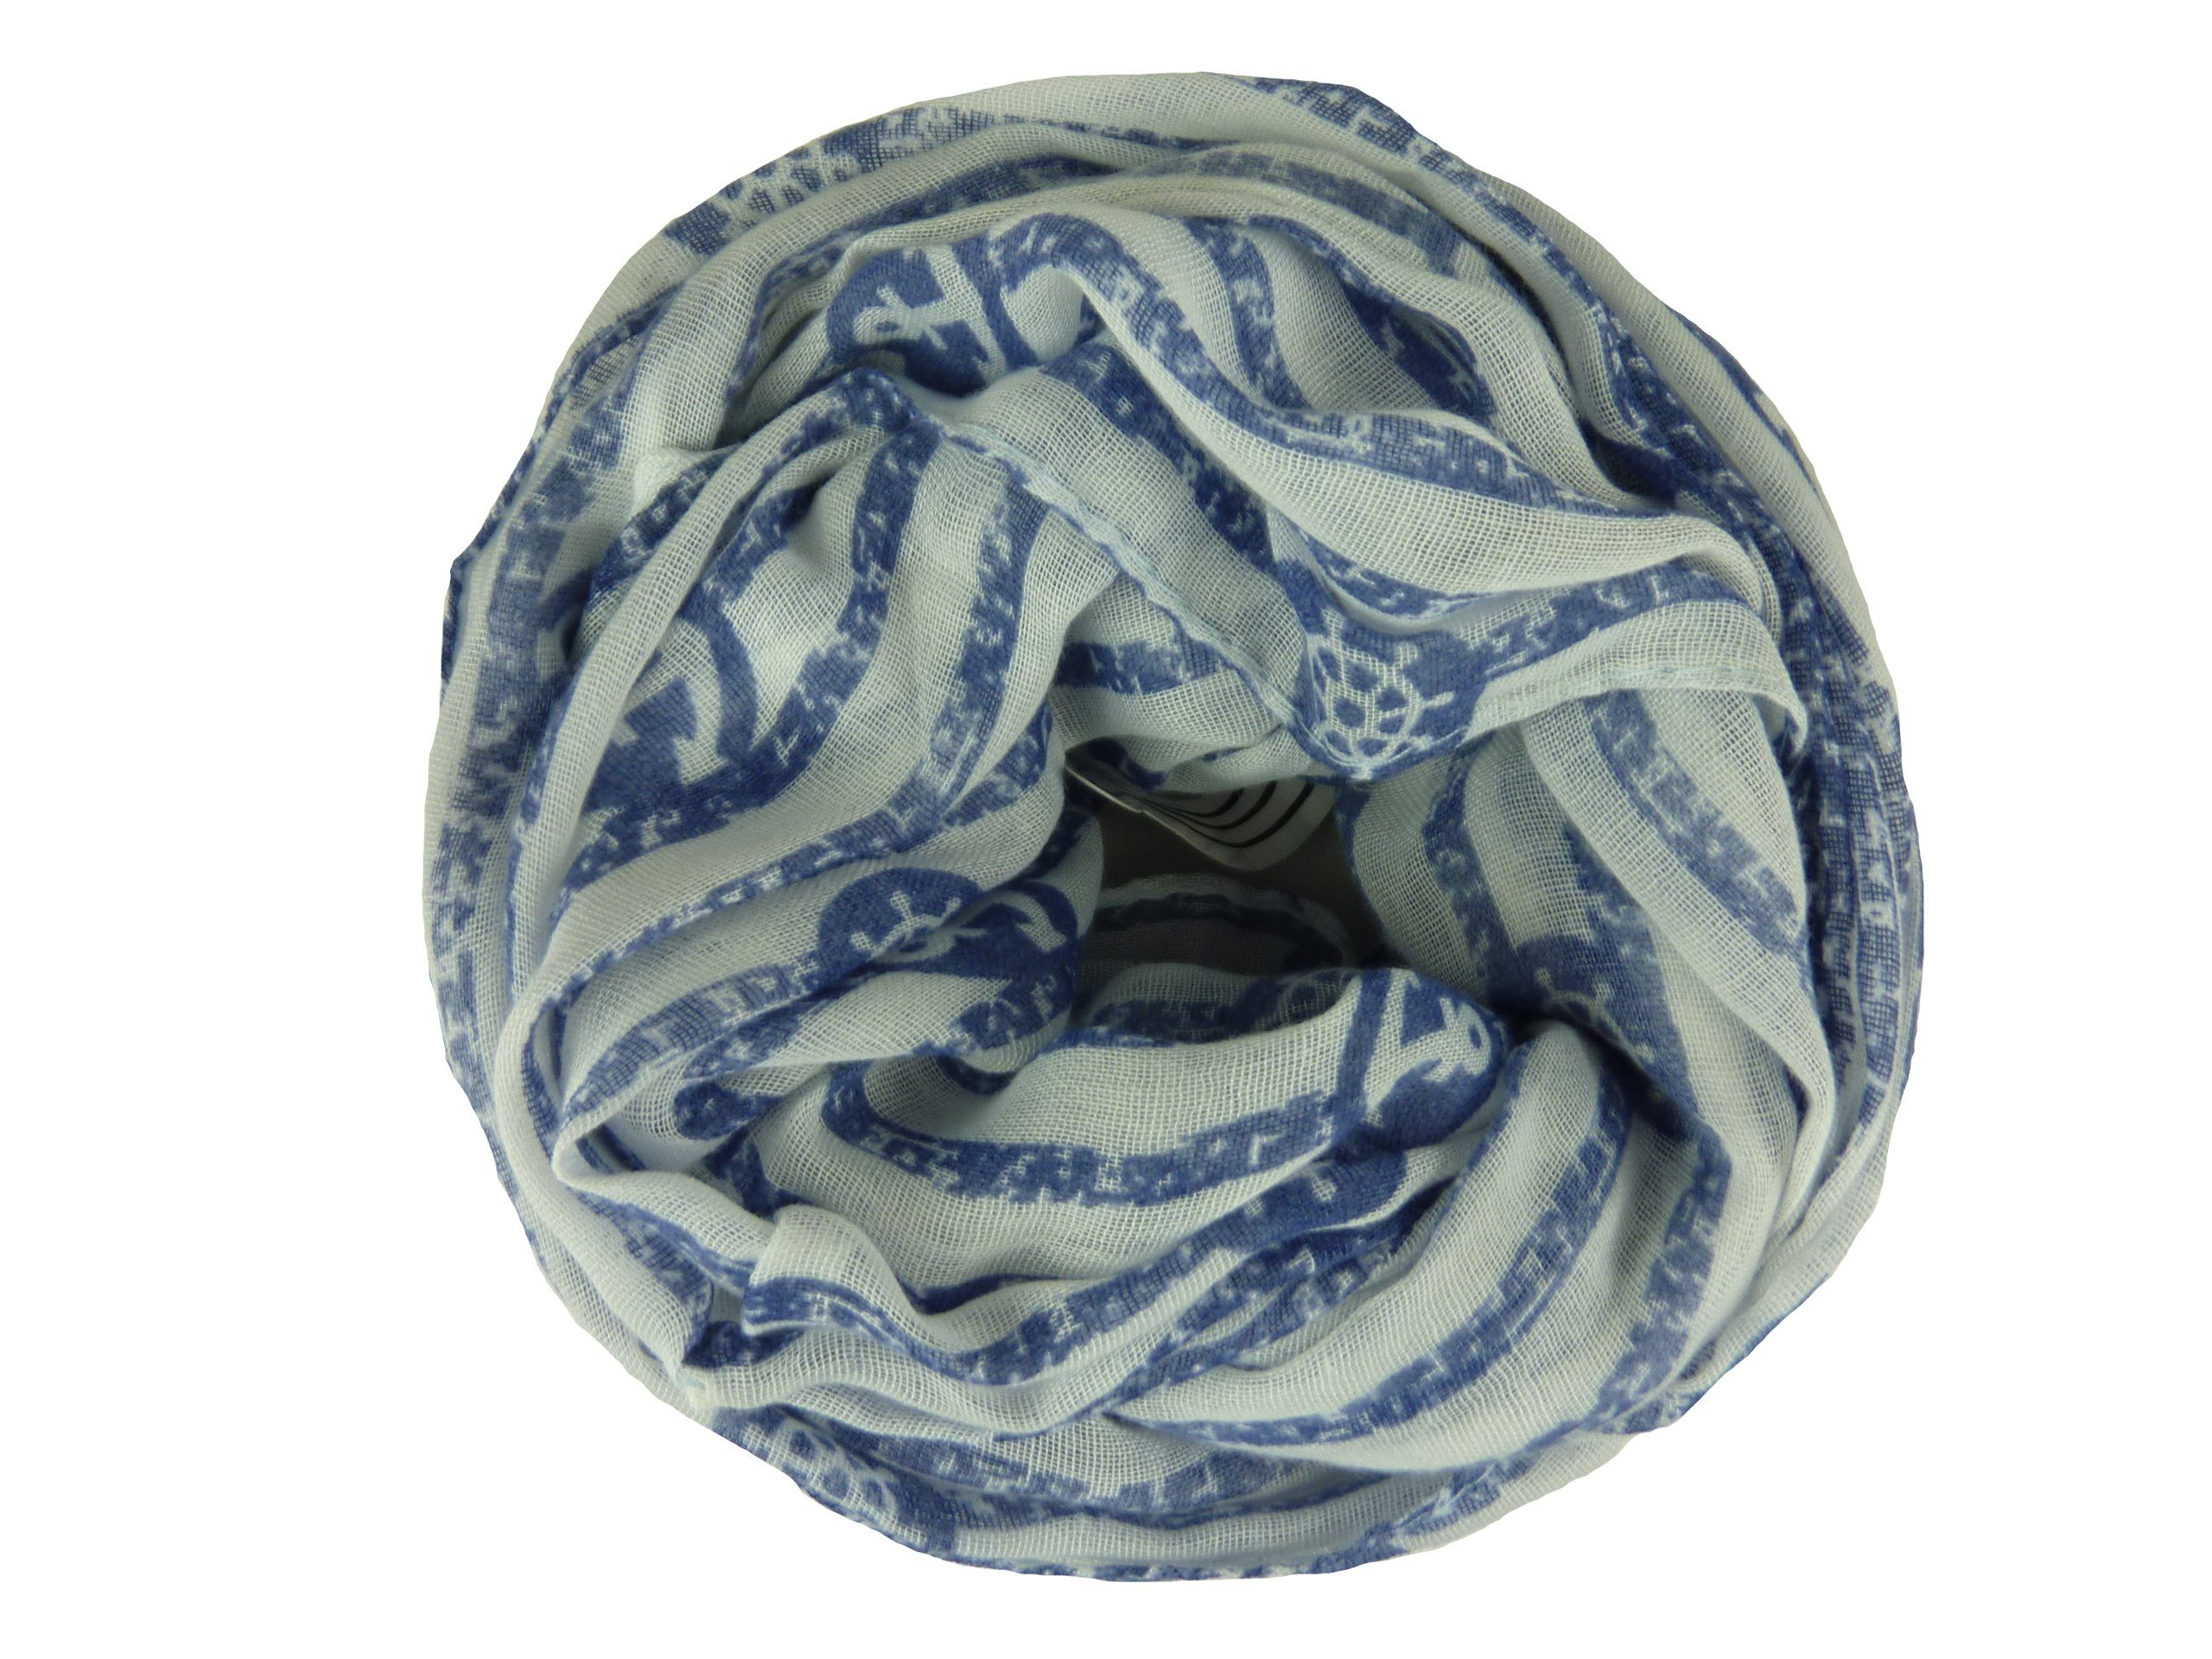 50% Damen und Loop Taschen4life Schal QSWB-52, Streifen Anker Schlauchschal Baumwolle weiß/blau Muster, Loop